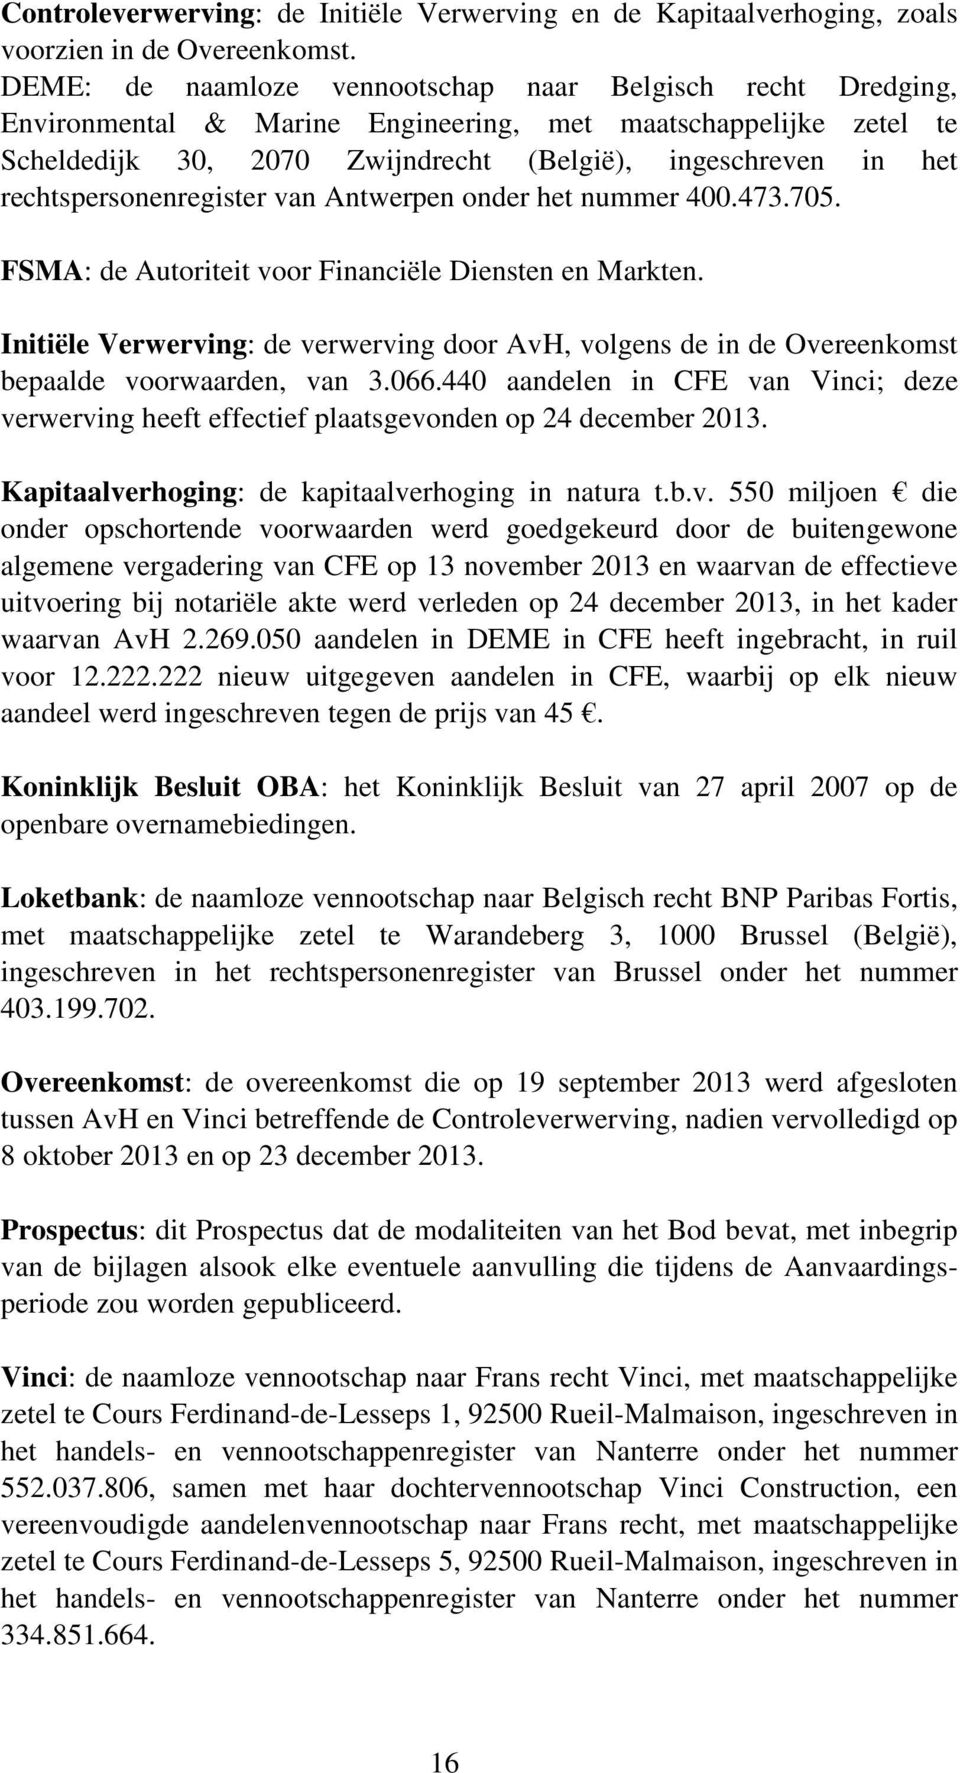 rechtspersonenregister van Antwerpen onder het nummer 400.473.705. FSMA: de Autoriteit voor Financiële Diensten en Markten.